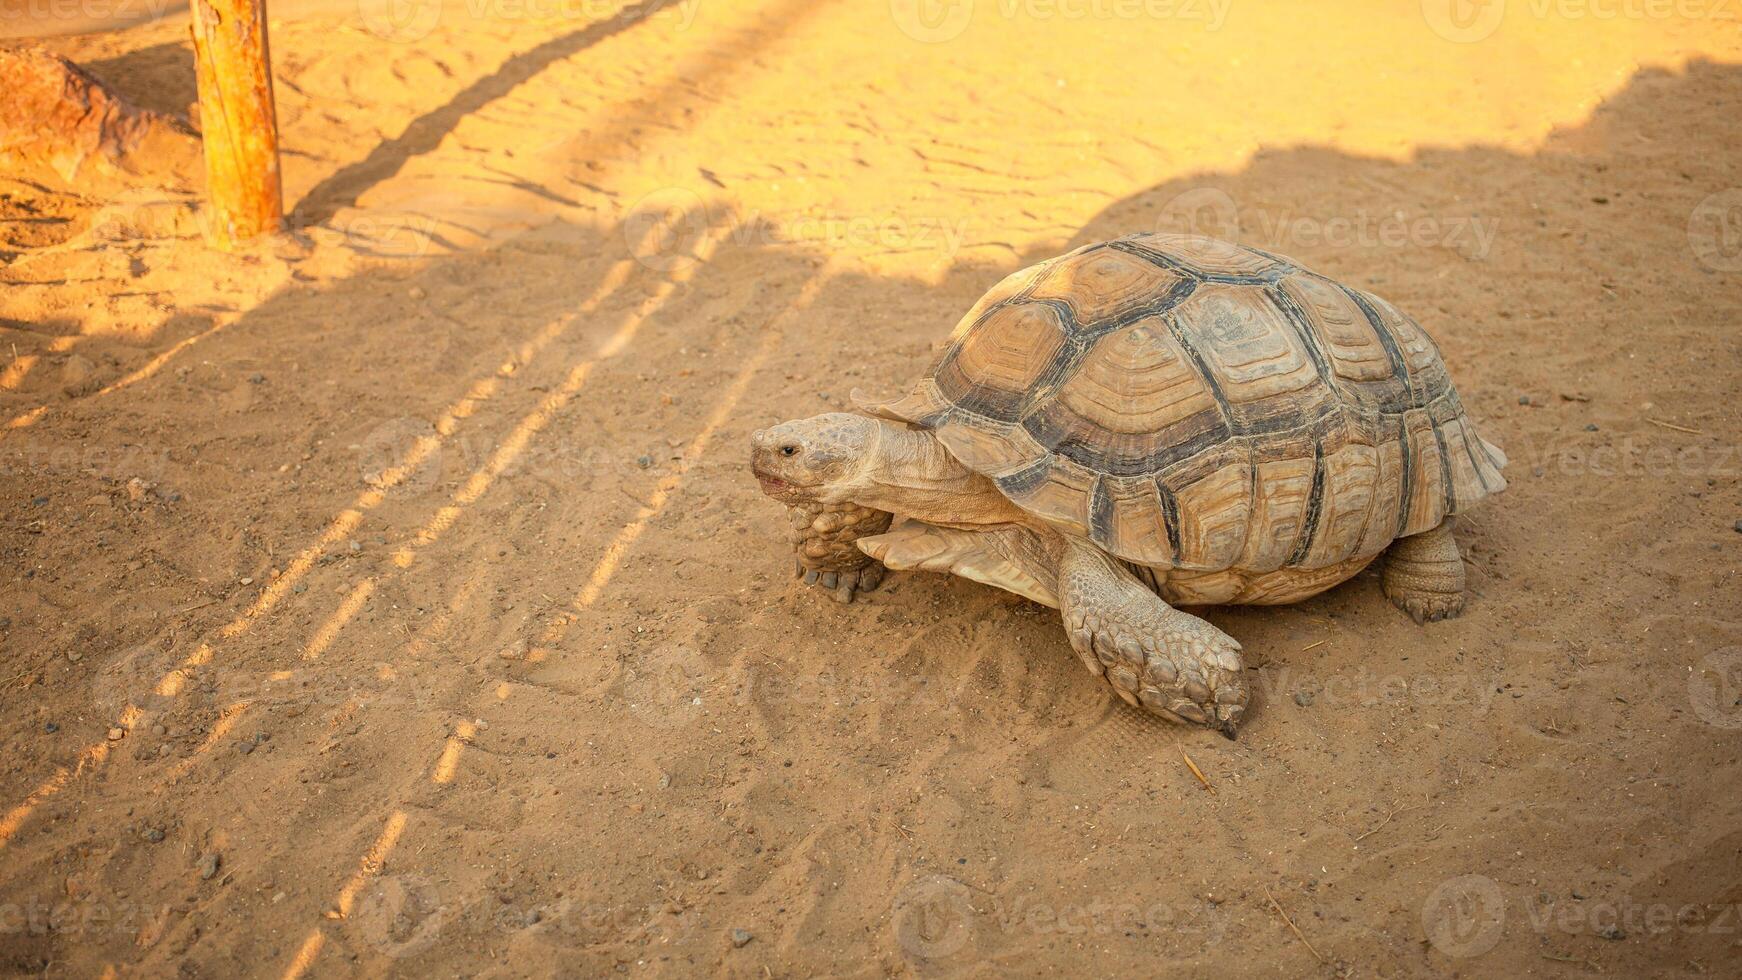 groot land- schildpad kruipt Aan de zand, langzaam. top visie foto